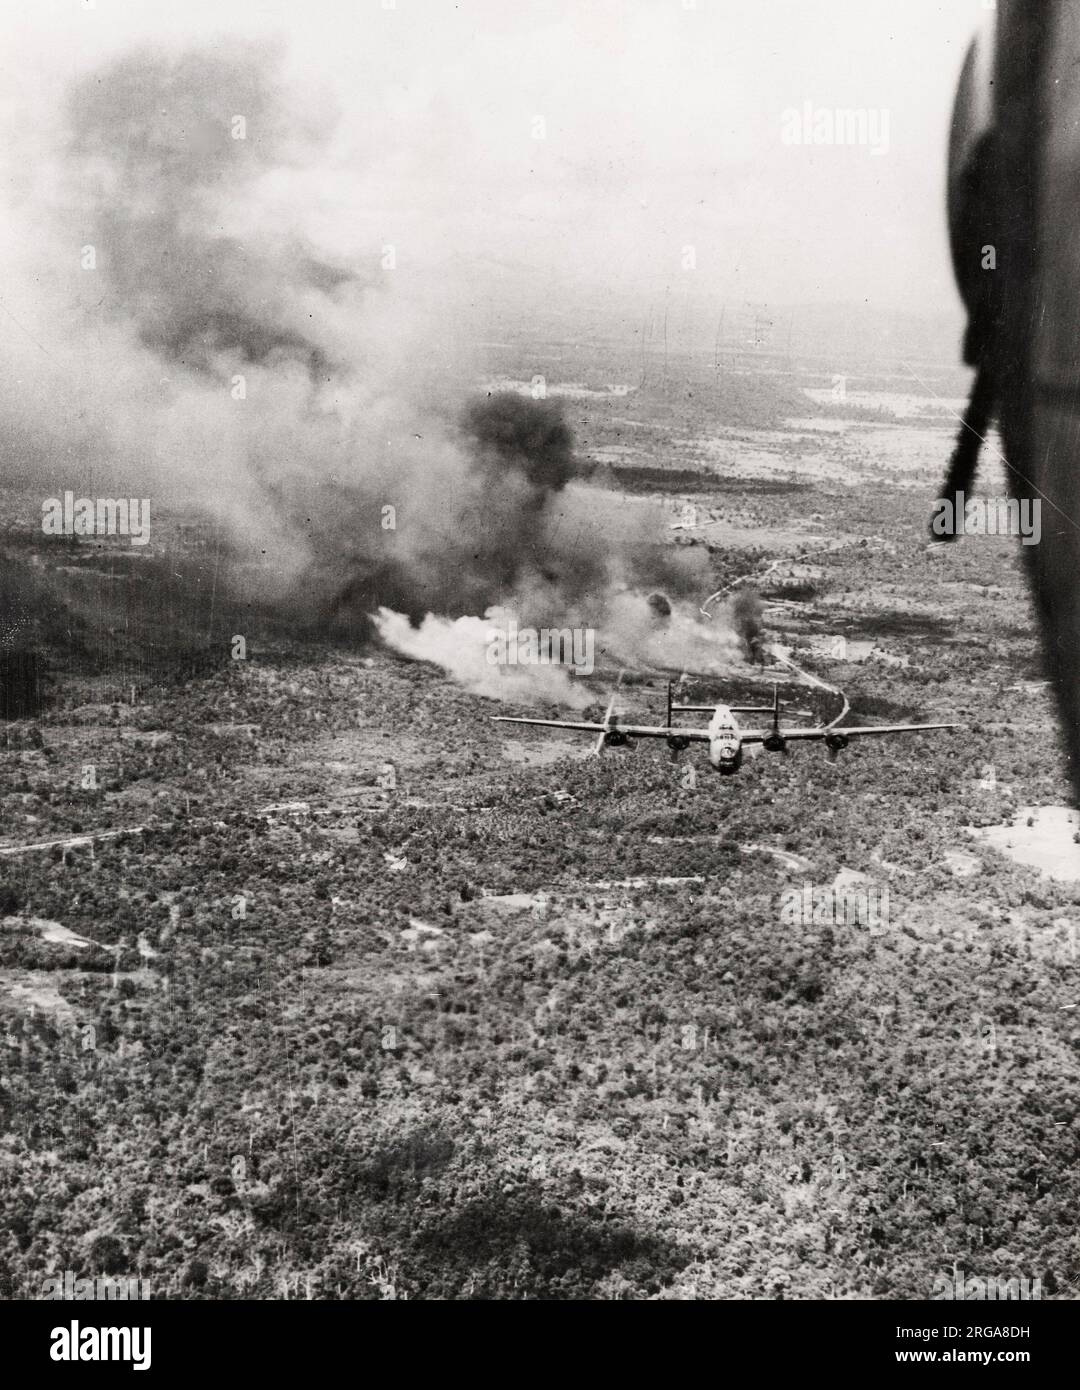 Fotografia d'epoca della seconda guerra mondiale - il bombardiere RAF Liberator fa cadere il suo carico su Na Nien Thailandia nella guerra contro il Giappone Foto Stock